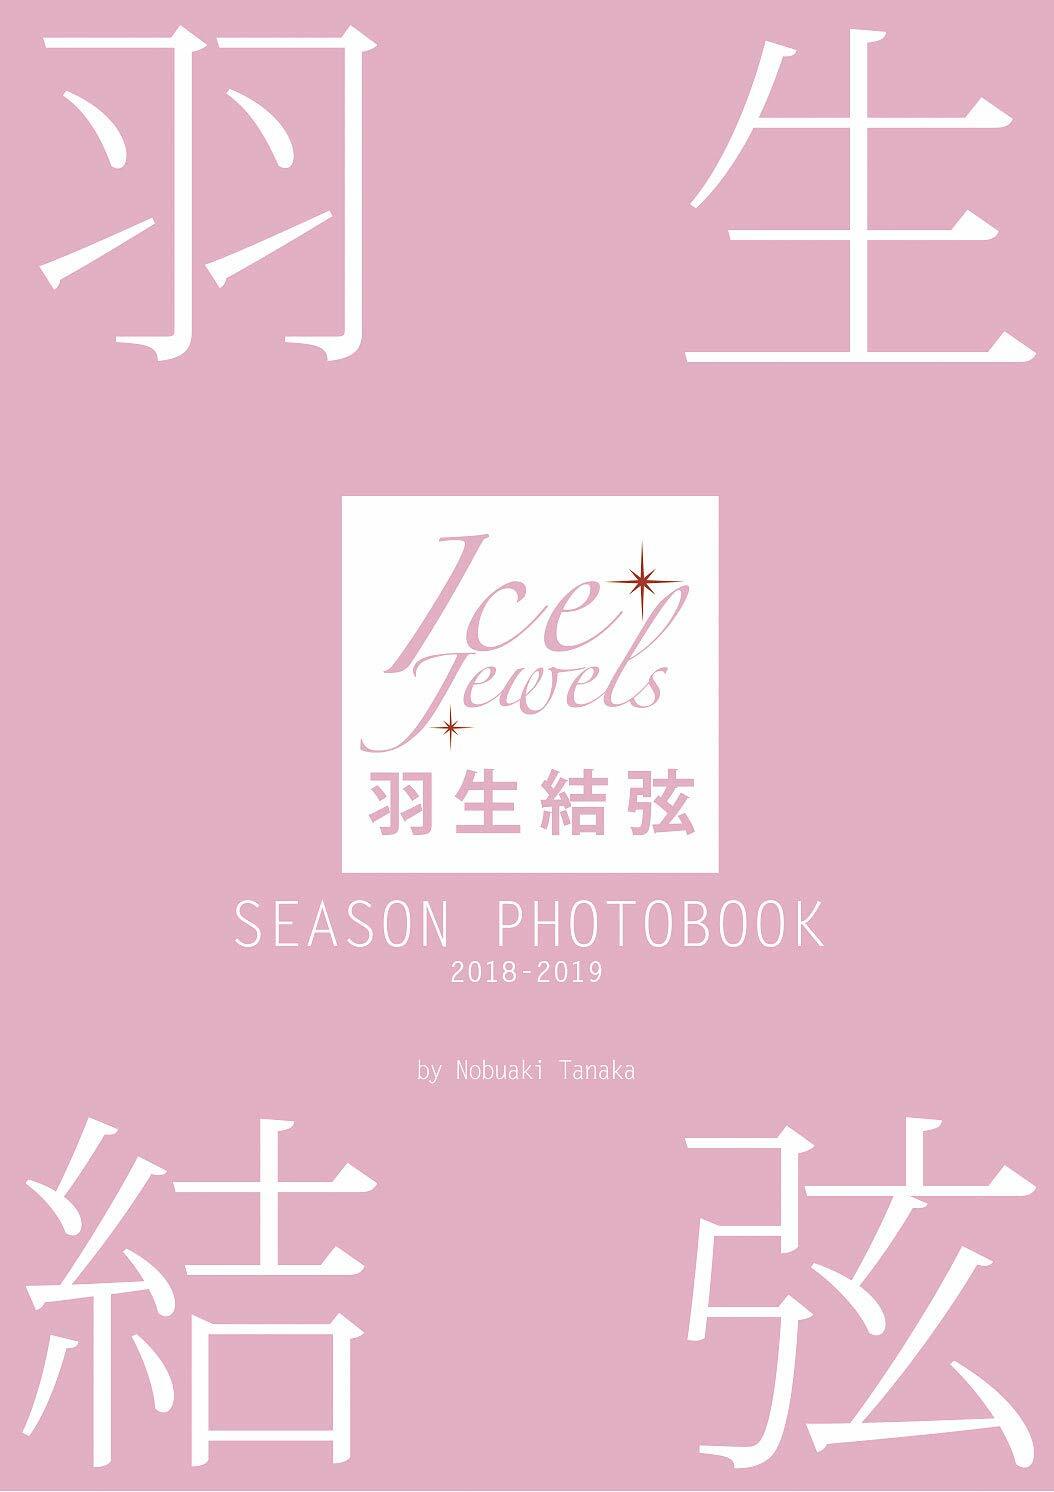 羽生結弦 SEASON PHOTOBOOK 2018-2019 (Ice Jewels特別編集)